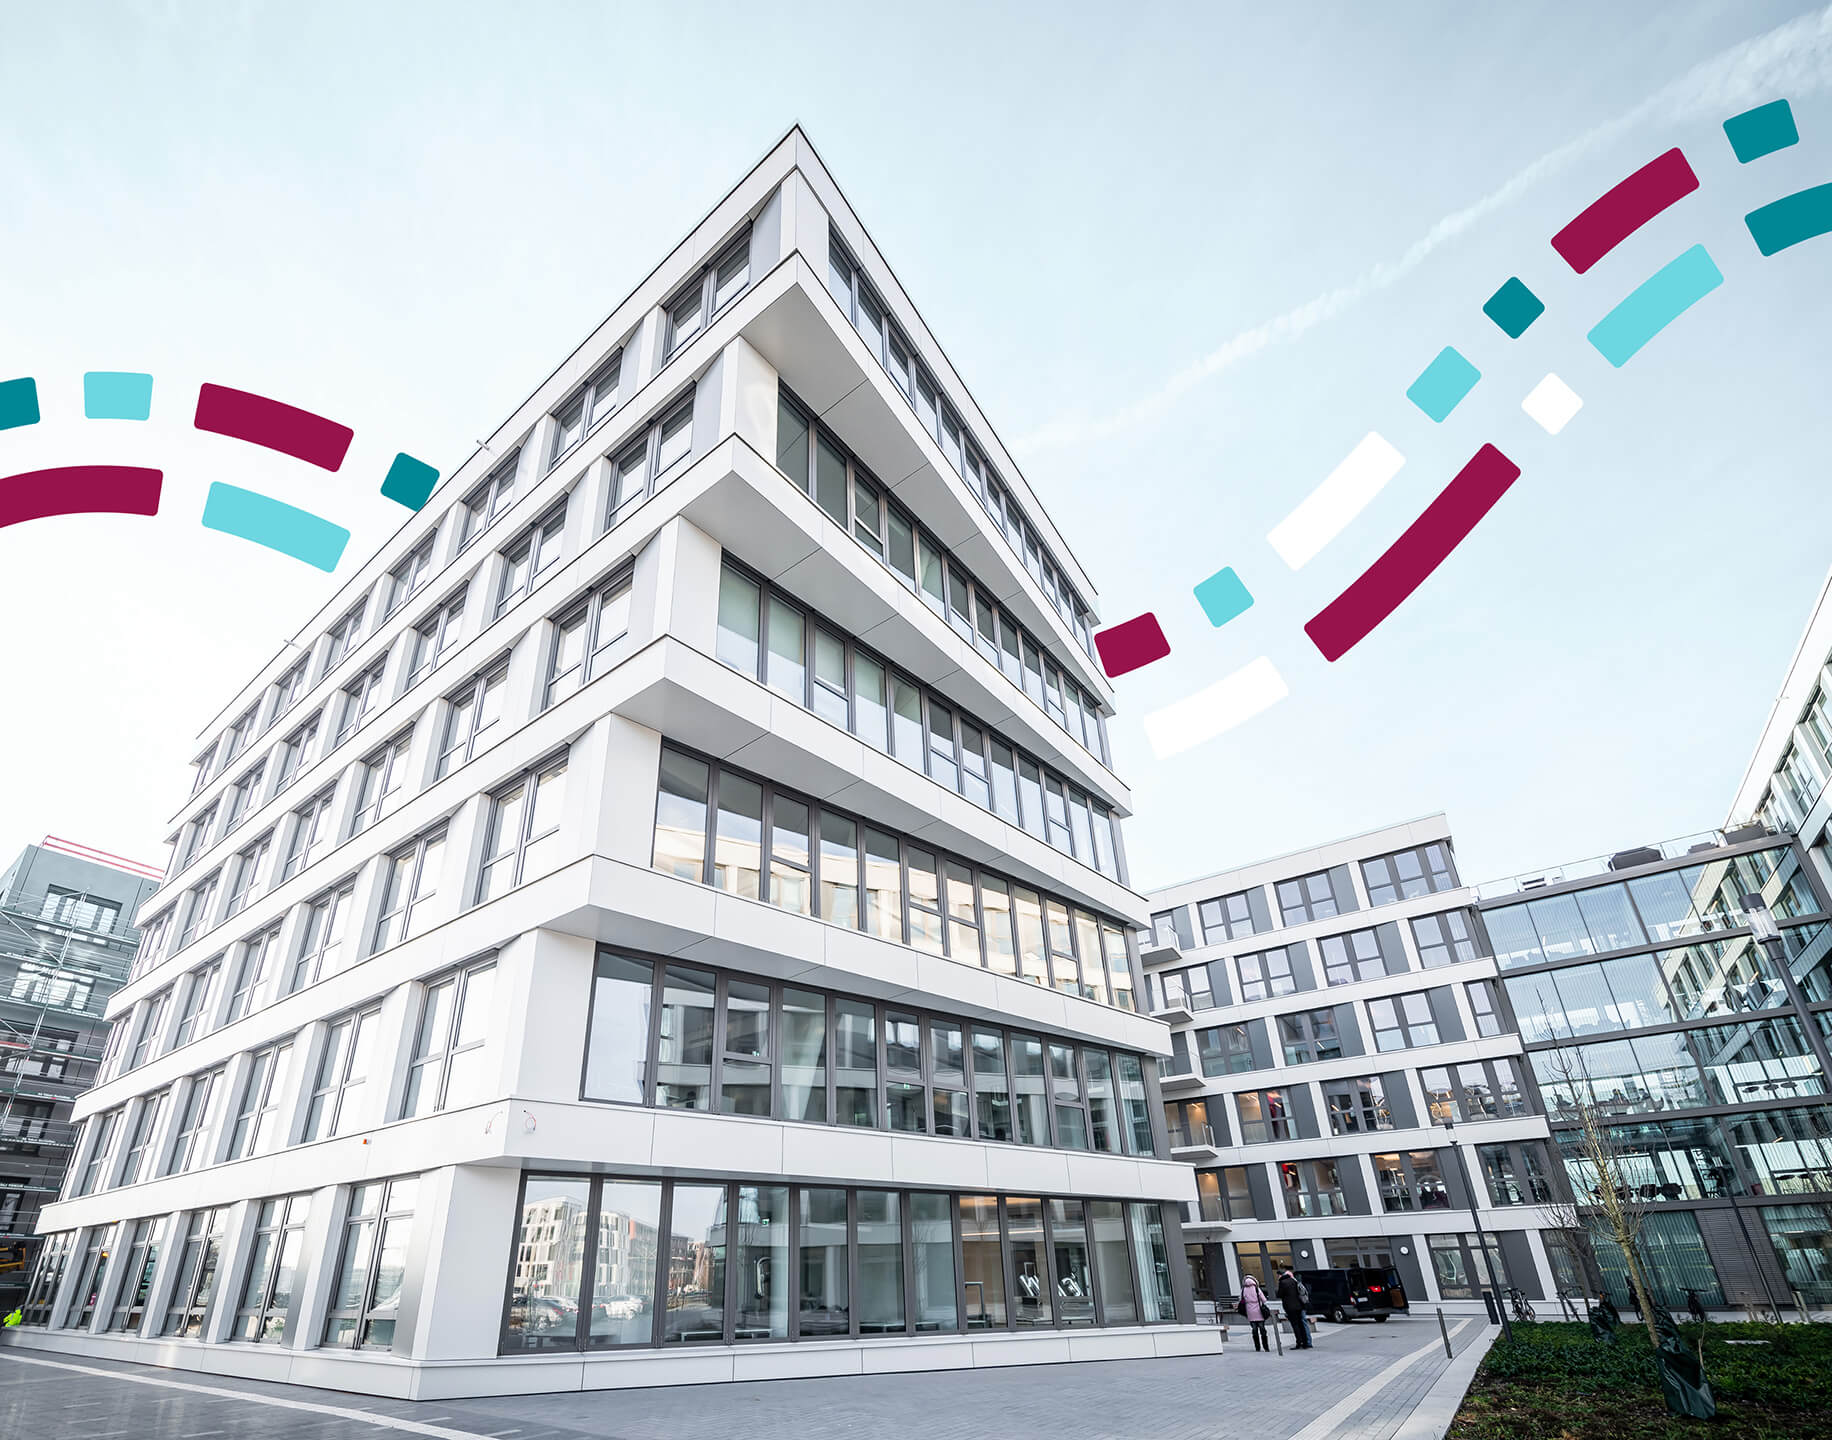 Plusnet Firmensitz in Köln - Foto von der Hausfassade des Kite in Ossendorf